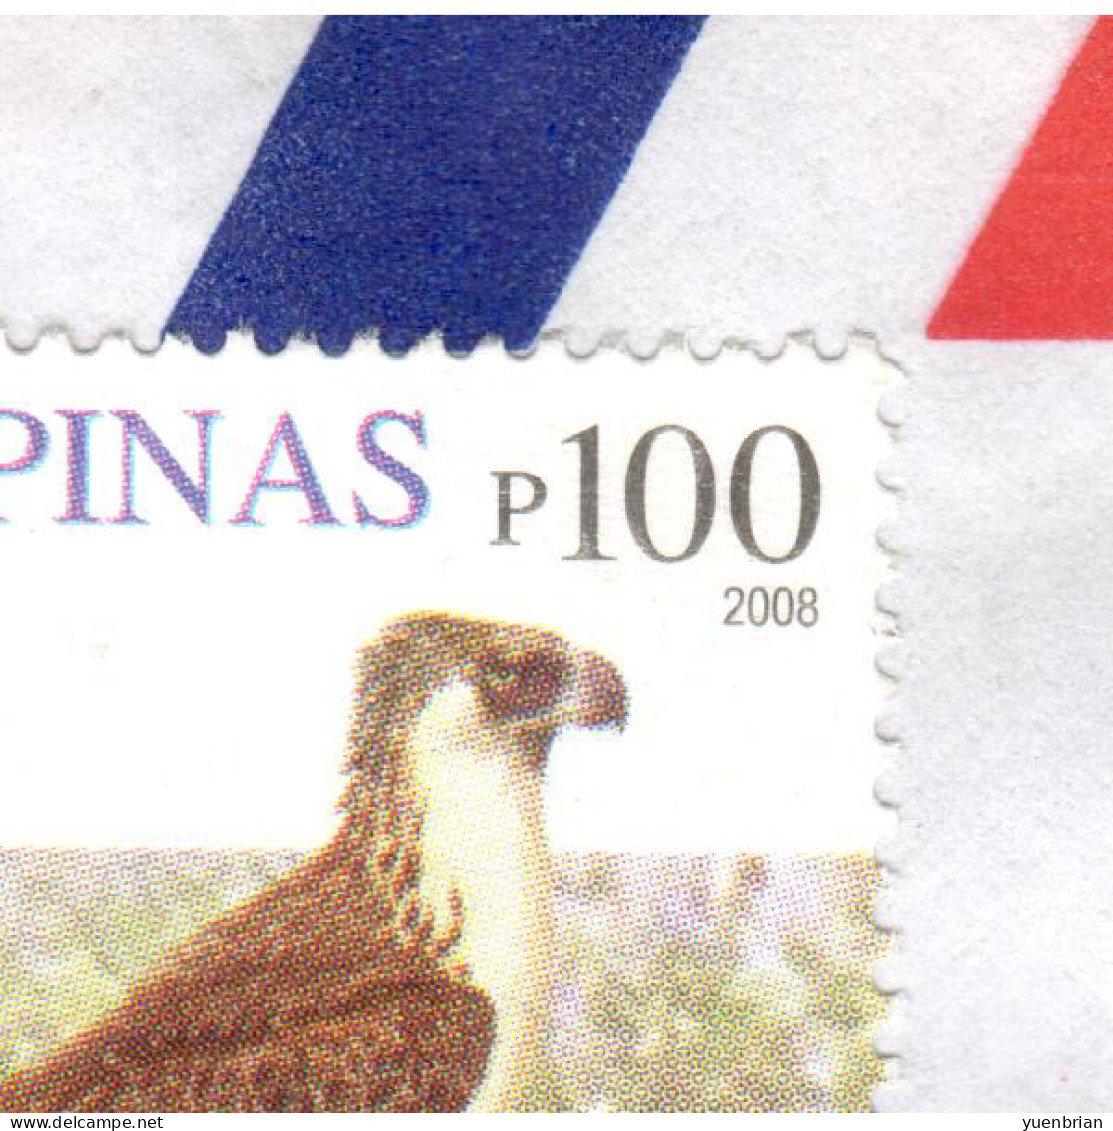 Philippines 2008, Bird, Birds, Eagle (2008), High Catalogue Value, Circulated Cover, Good Condition - Eagles & Birds Of Prey